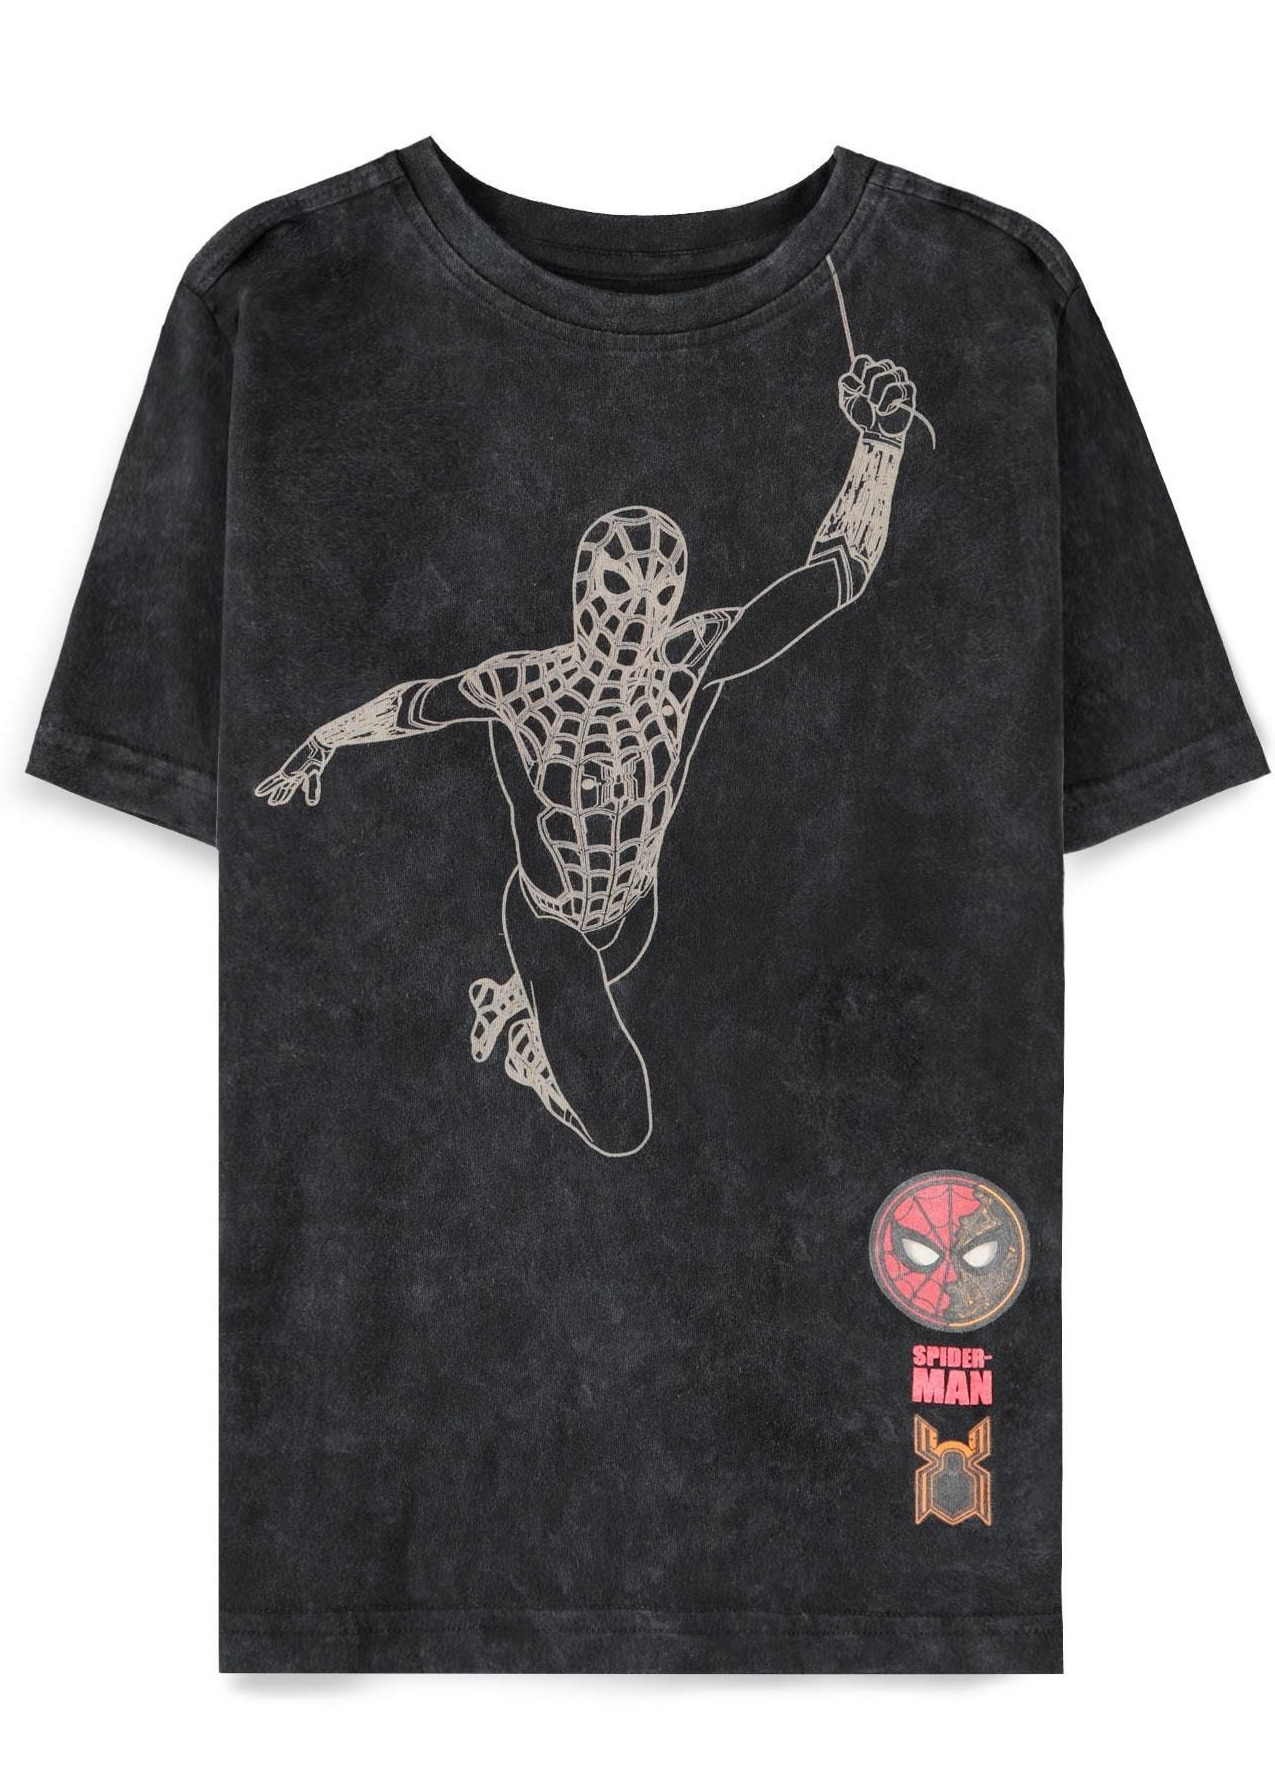 Tričko dětské Spider-Man - Tie Dye